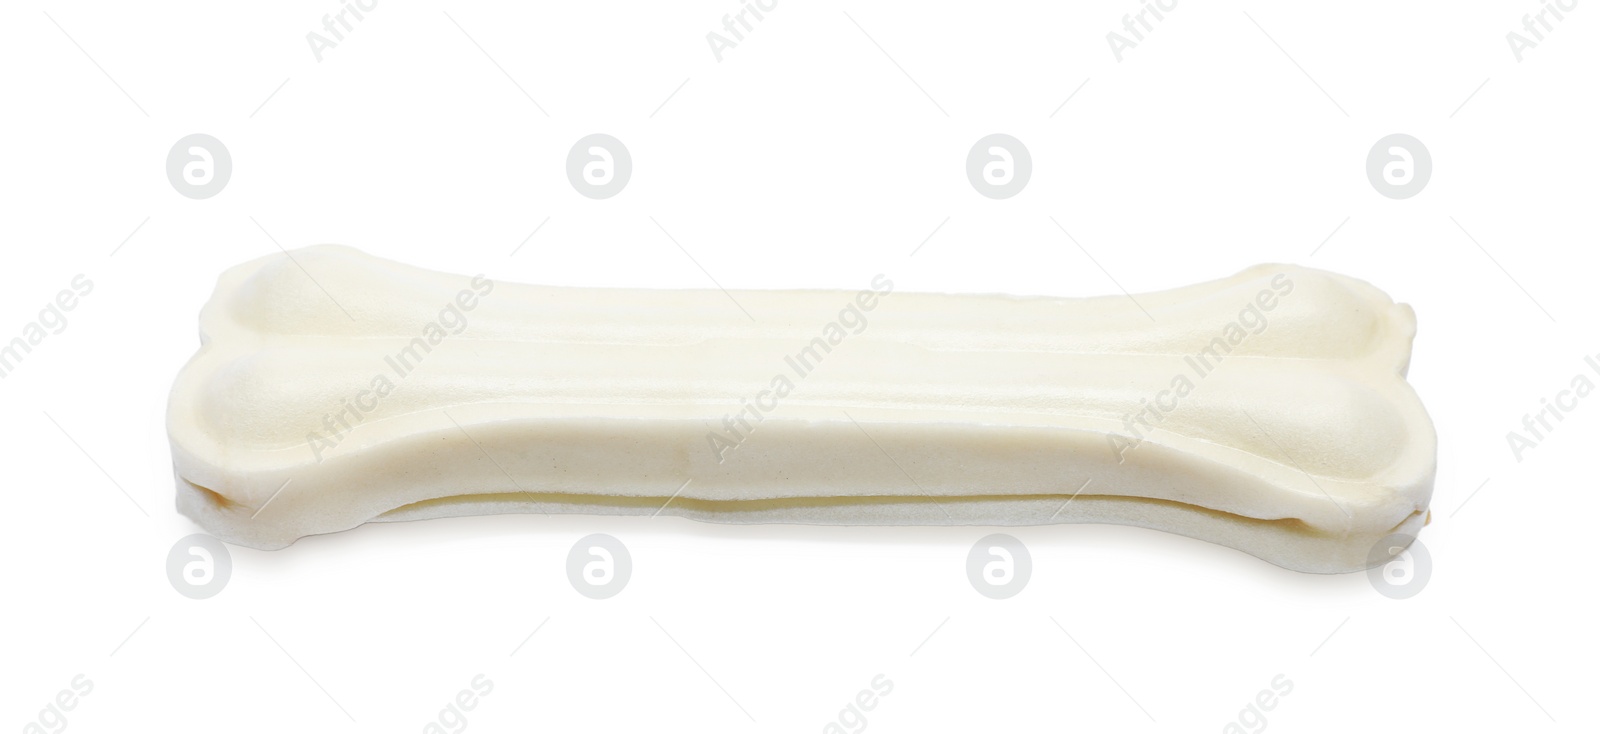 Photo of One bone dog treat isolated on white